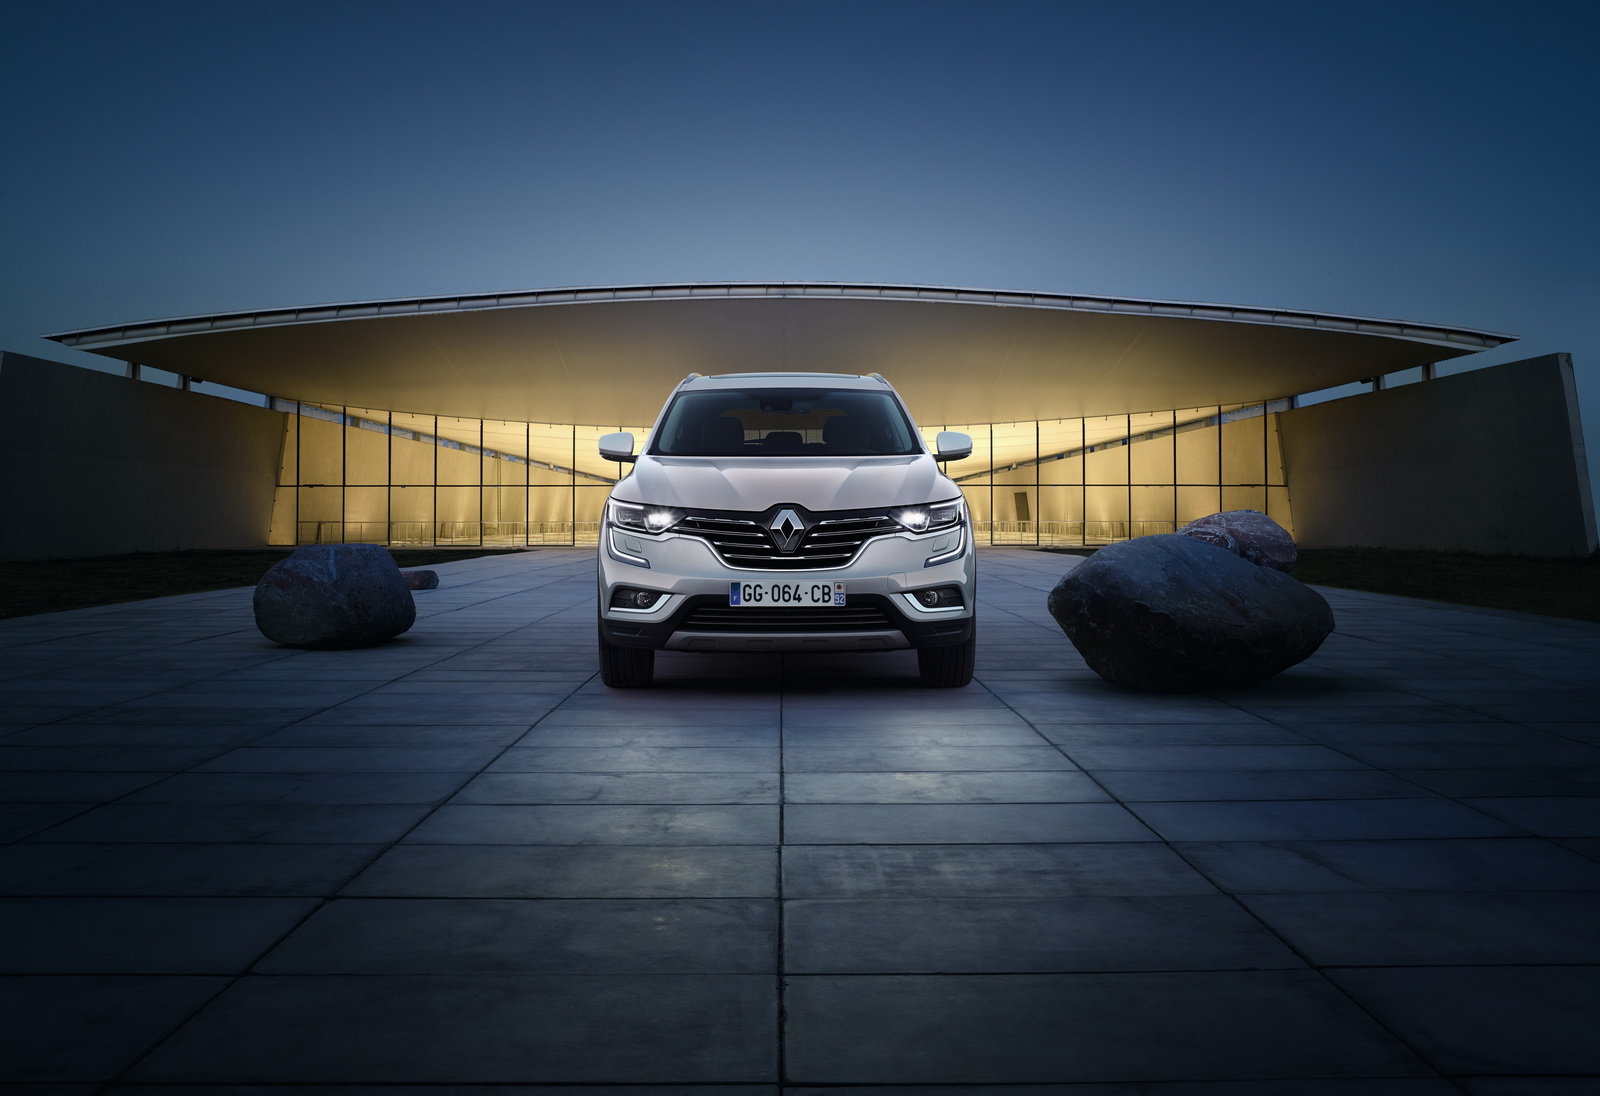 Renault Koleos dostal druhou generaci, která je výrazně hezčí než ta první.